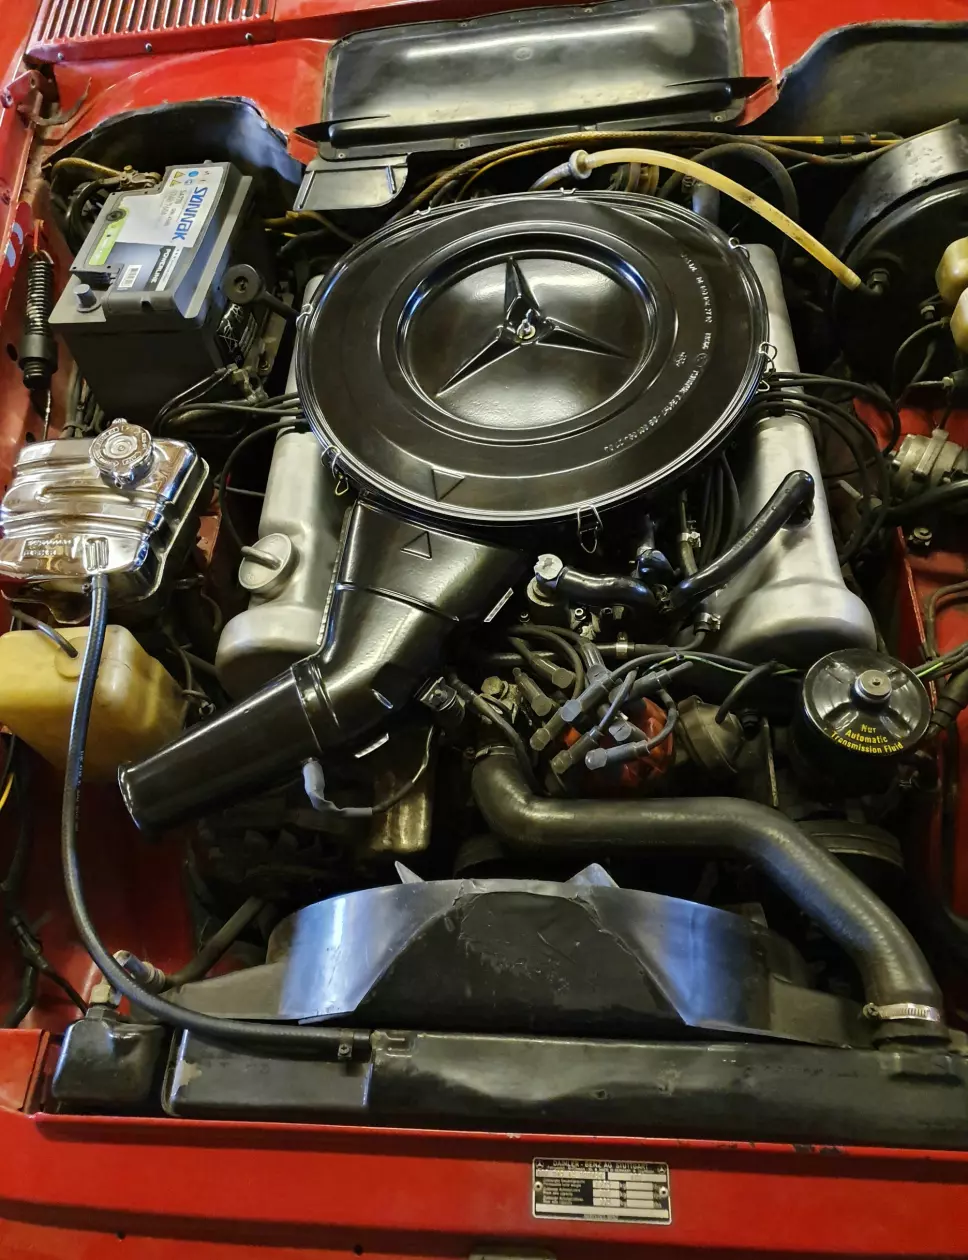 INDRE ORGANER: Slik ser det ut i brystkassa til Geir Schau – eller mer presist: under panseret på hans Mercedes 350 SL.